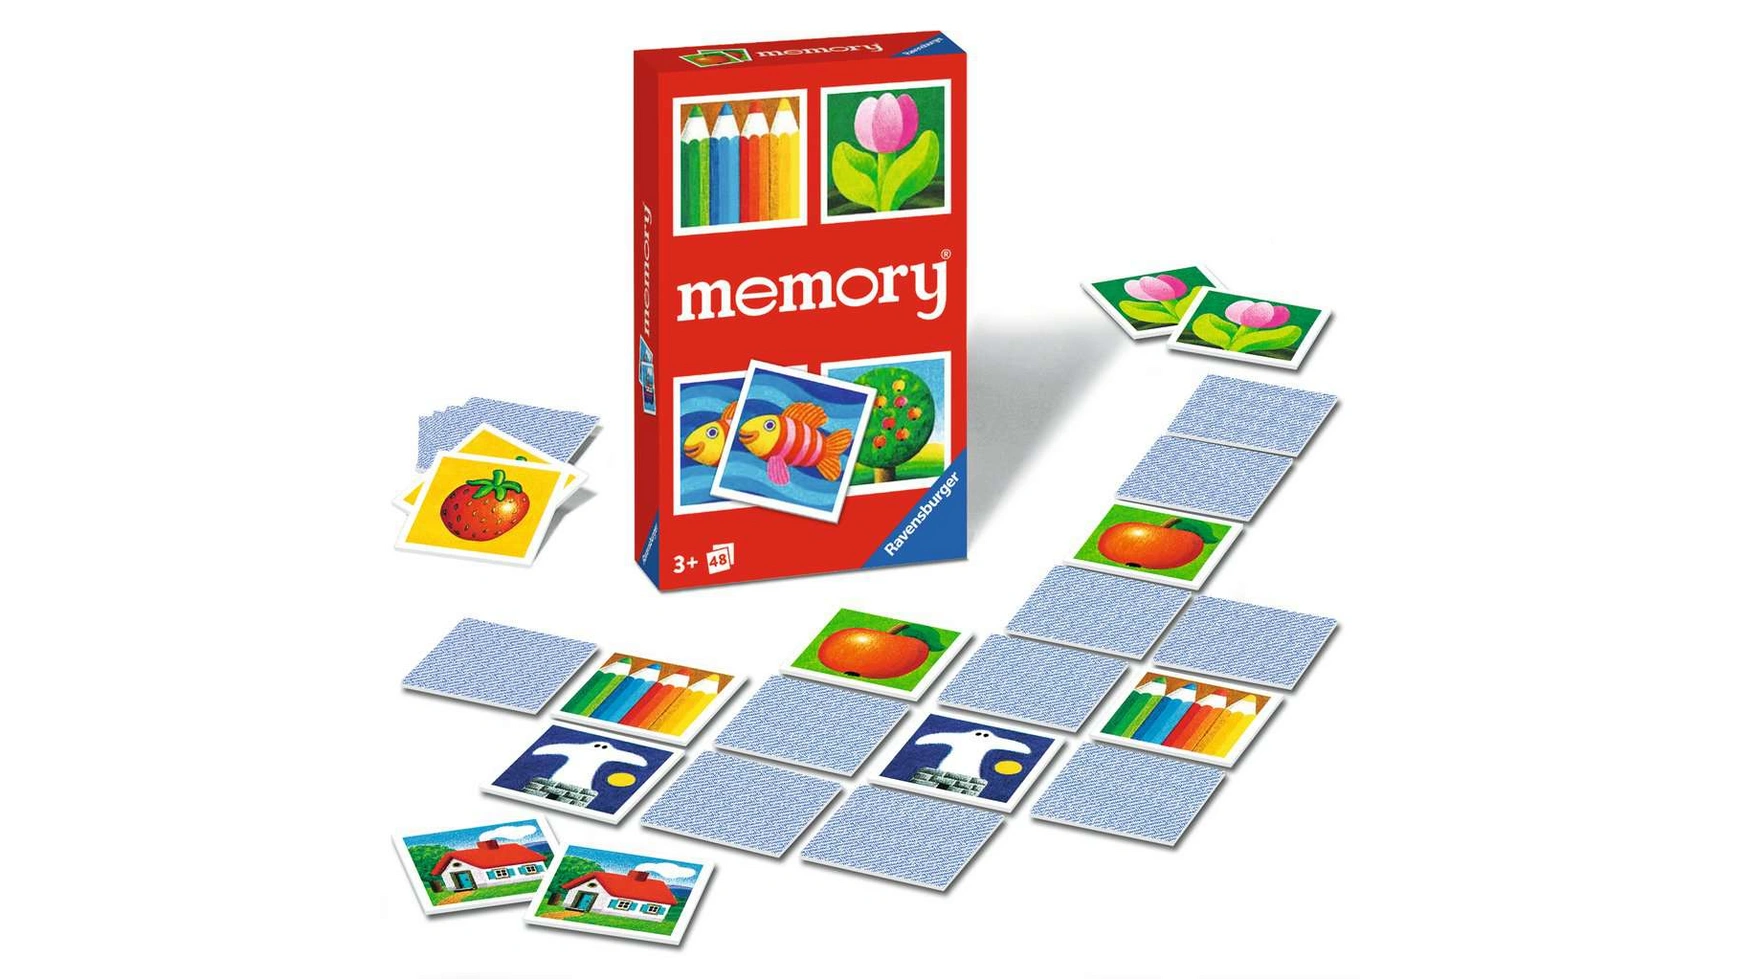 Ravensburger Spiele детская память, классическая игра для всей семьи, игра на память для 2-6 игроков от 3 лет и старше